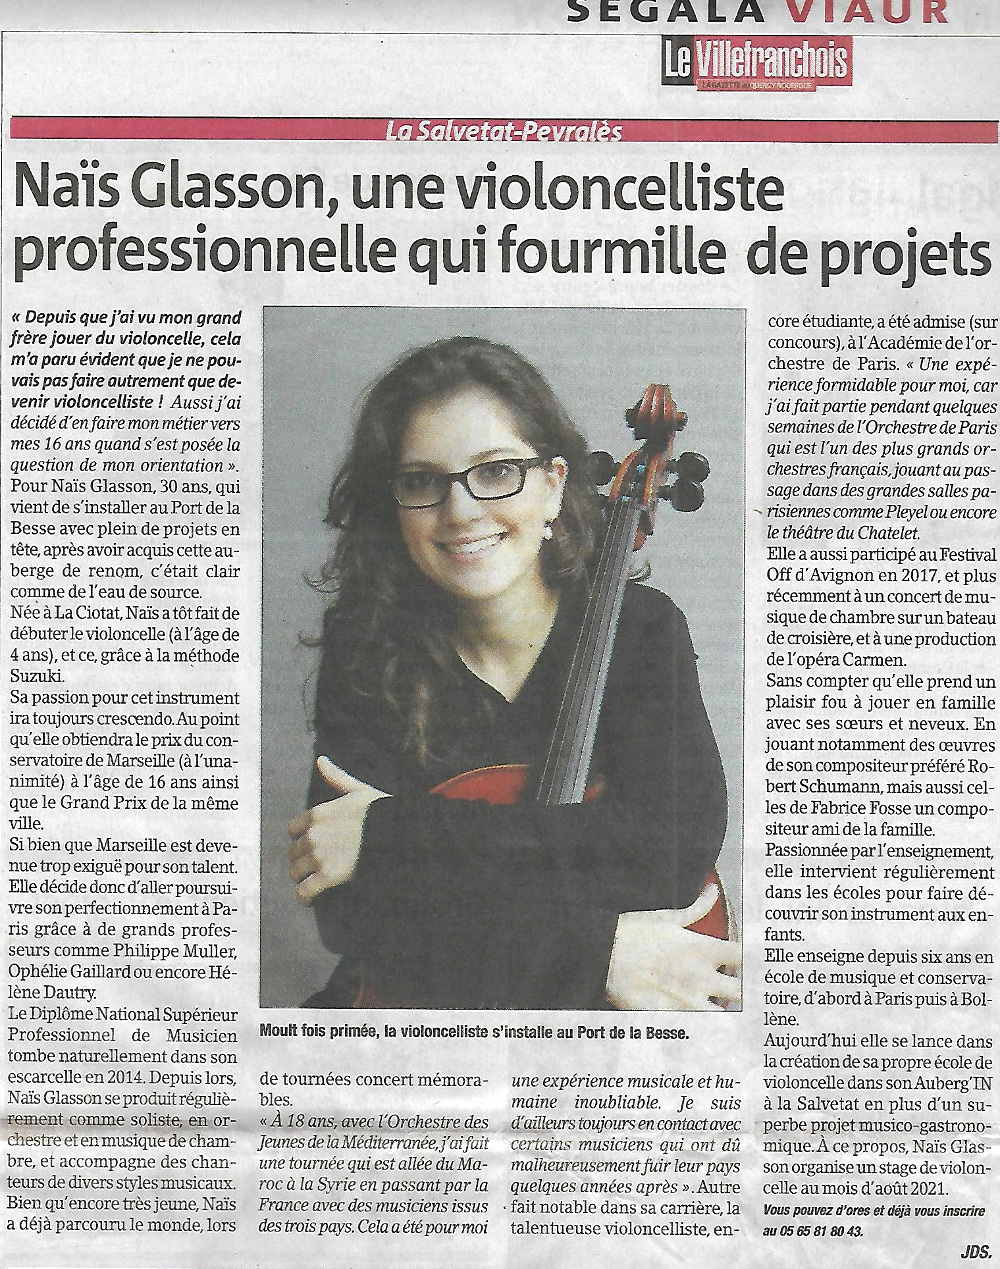 capture d'un article dans le journal hebdomadaire Le Villefranchois : « Naïs Glasson, une violoncelliste professionnelle qui fourmille de projets »